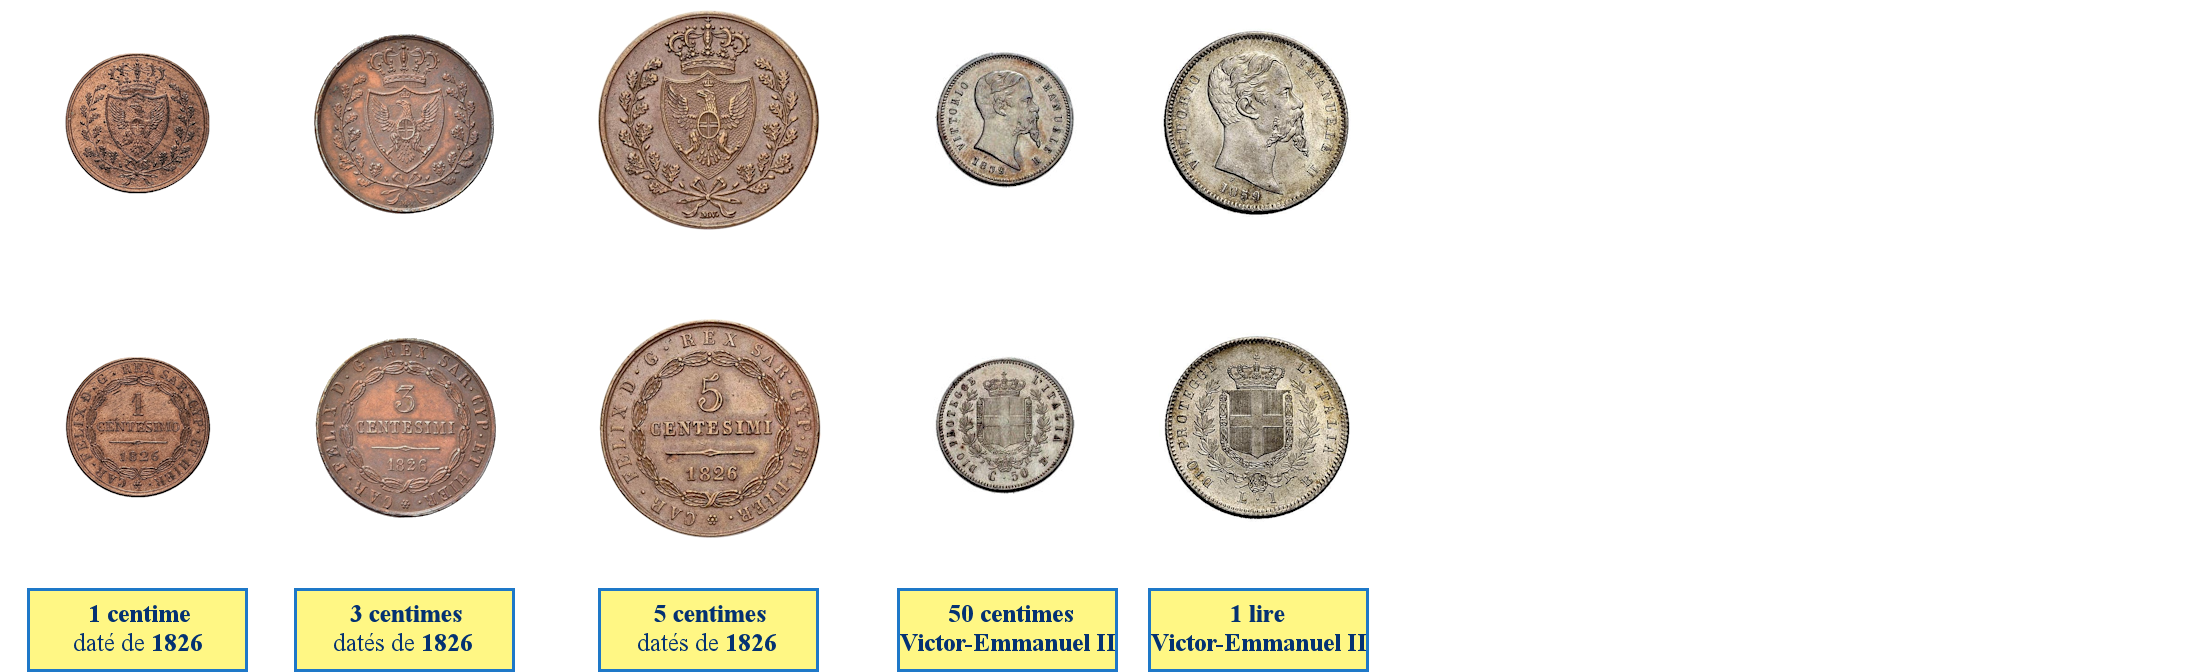 Photos de pièces émise par le gouvernement des provinces de l'Emilie 1859-1860)